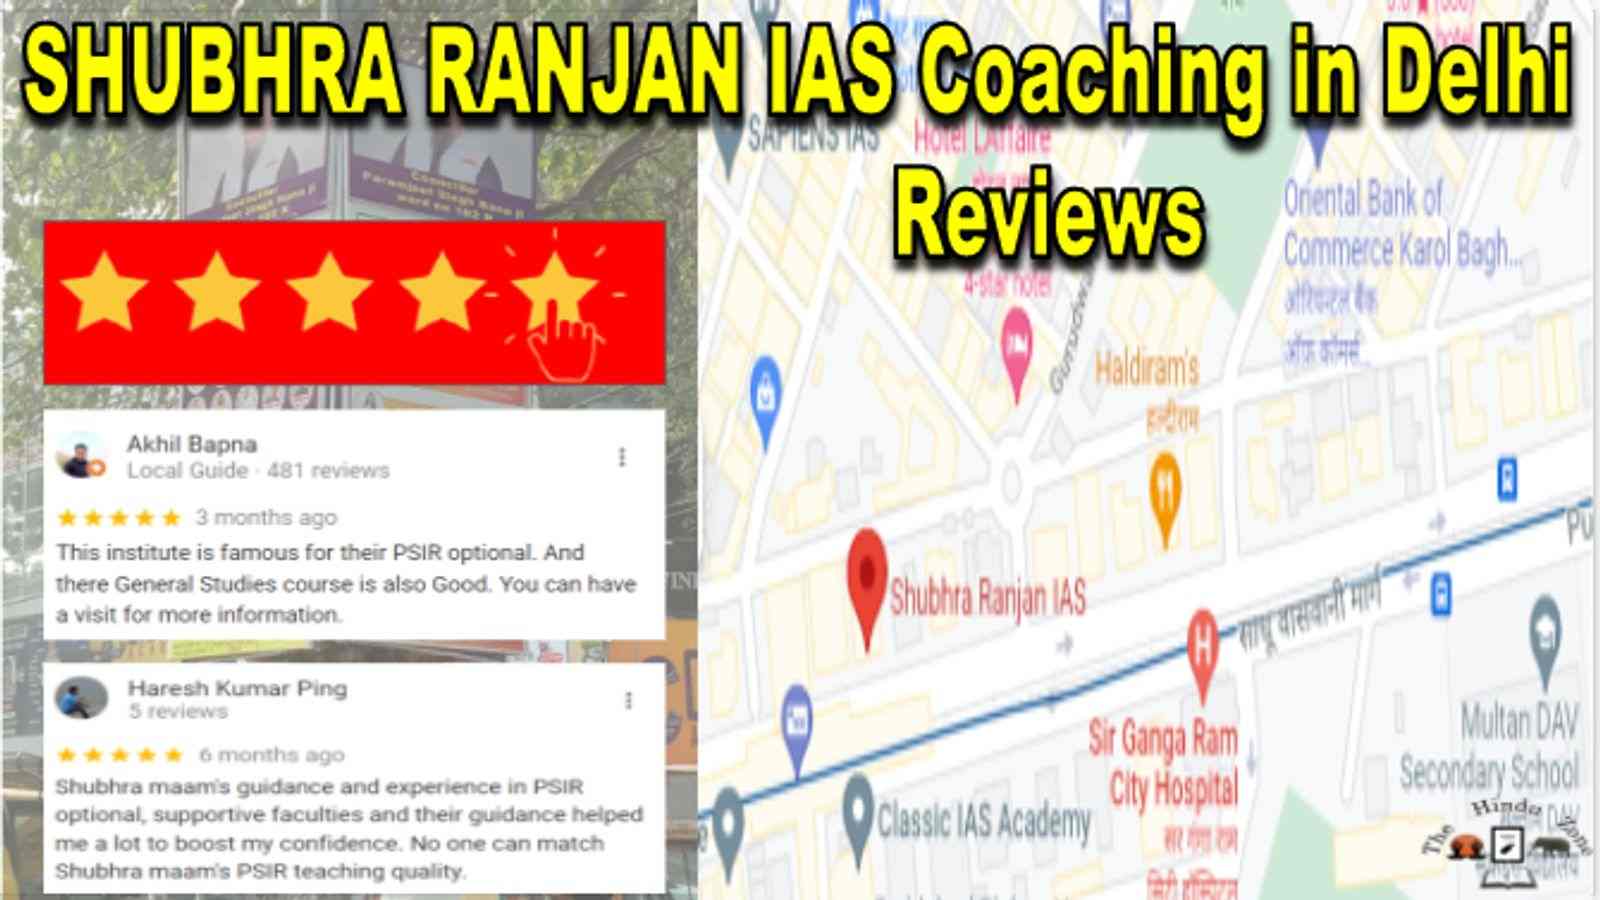 Shubhra Ranjan IAS Coaching in Delhi Reviews